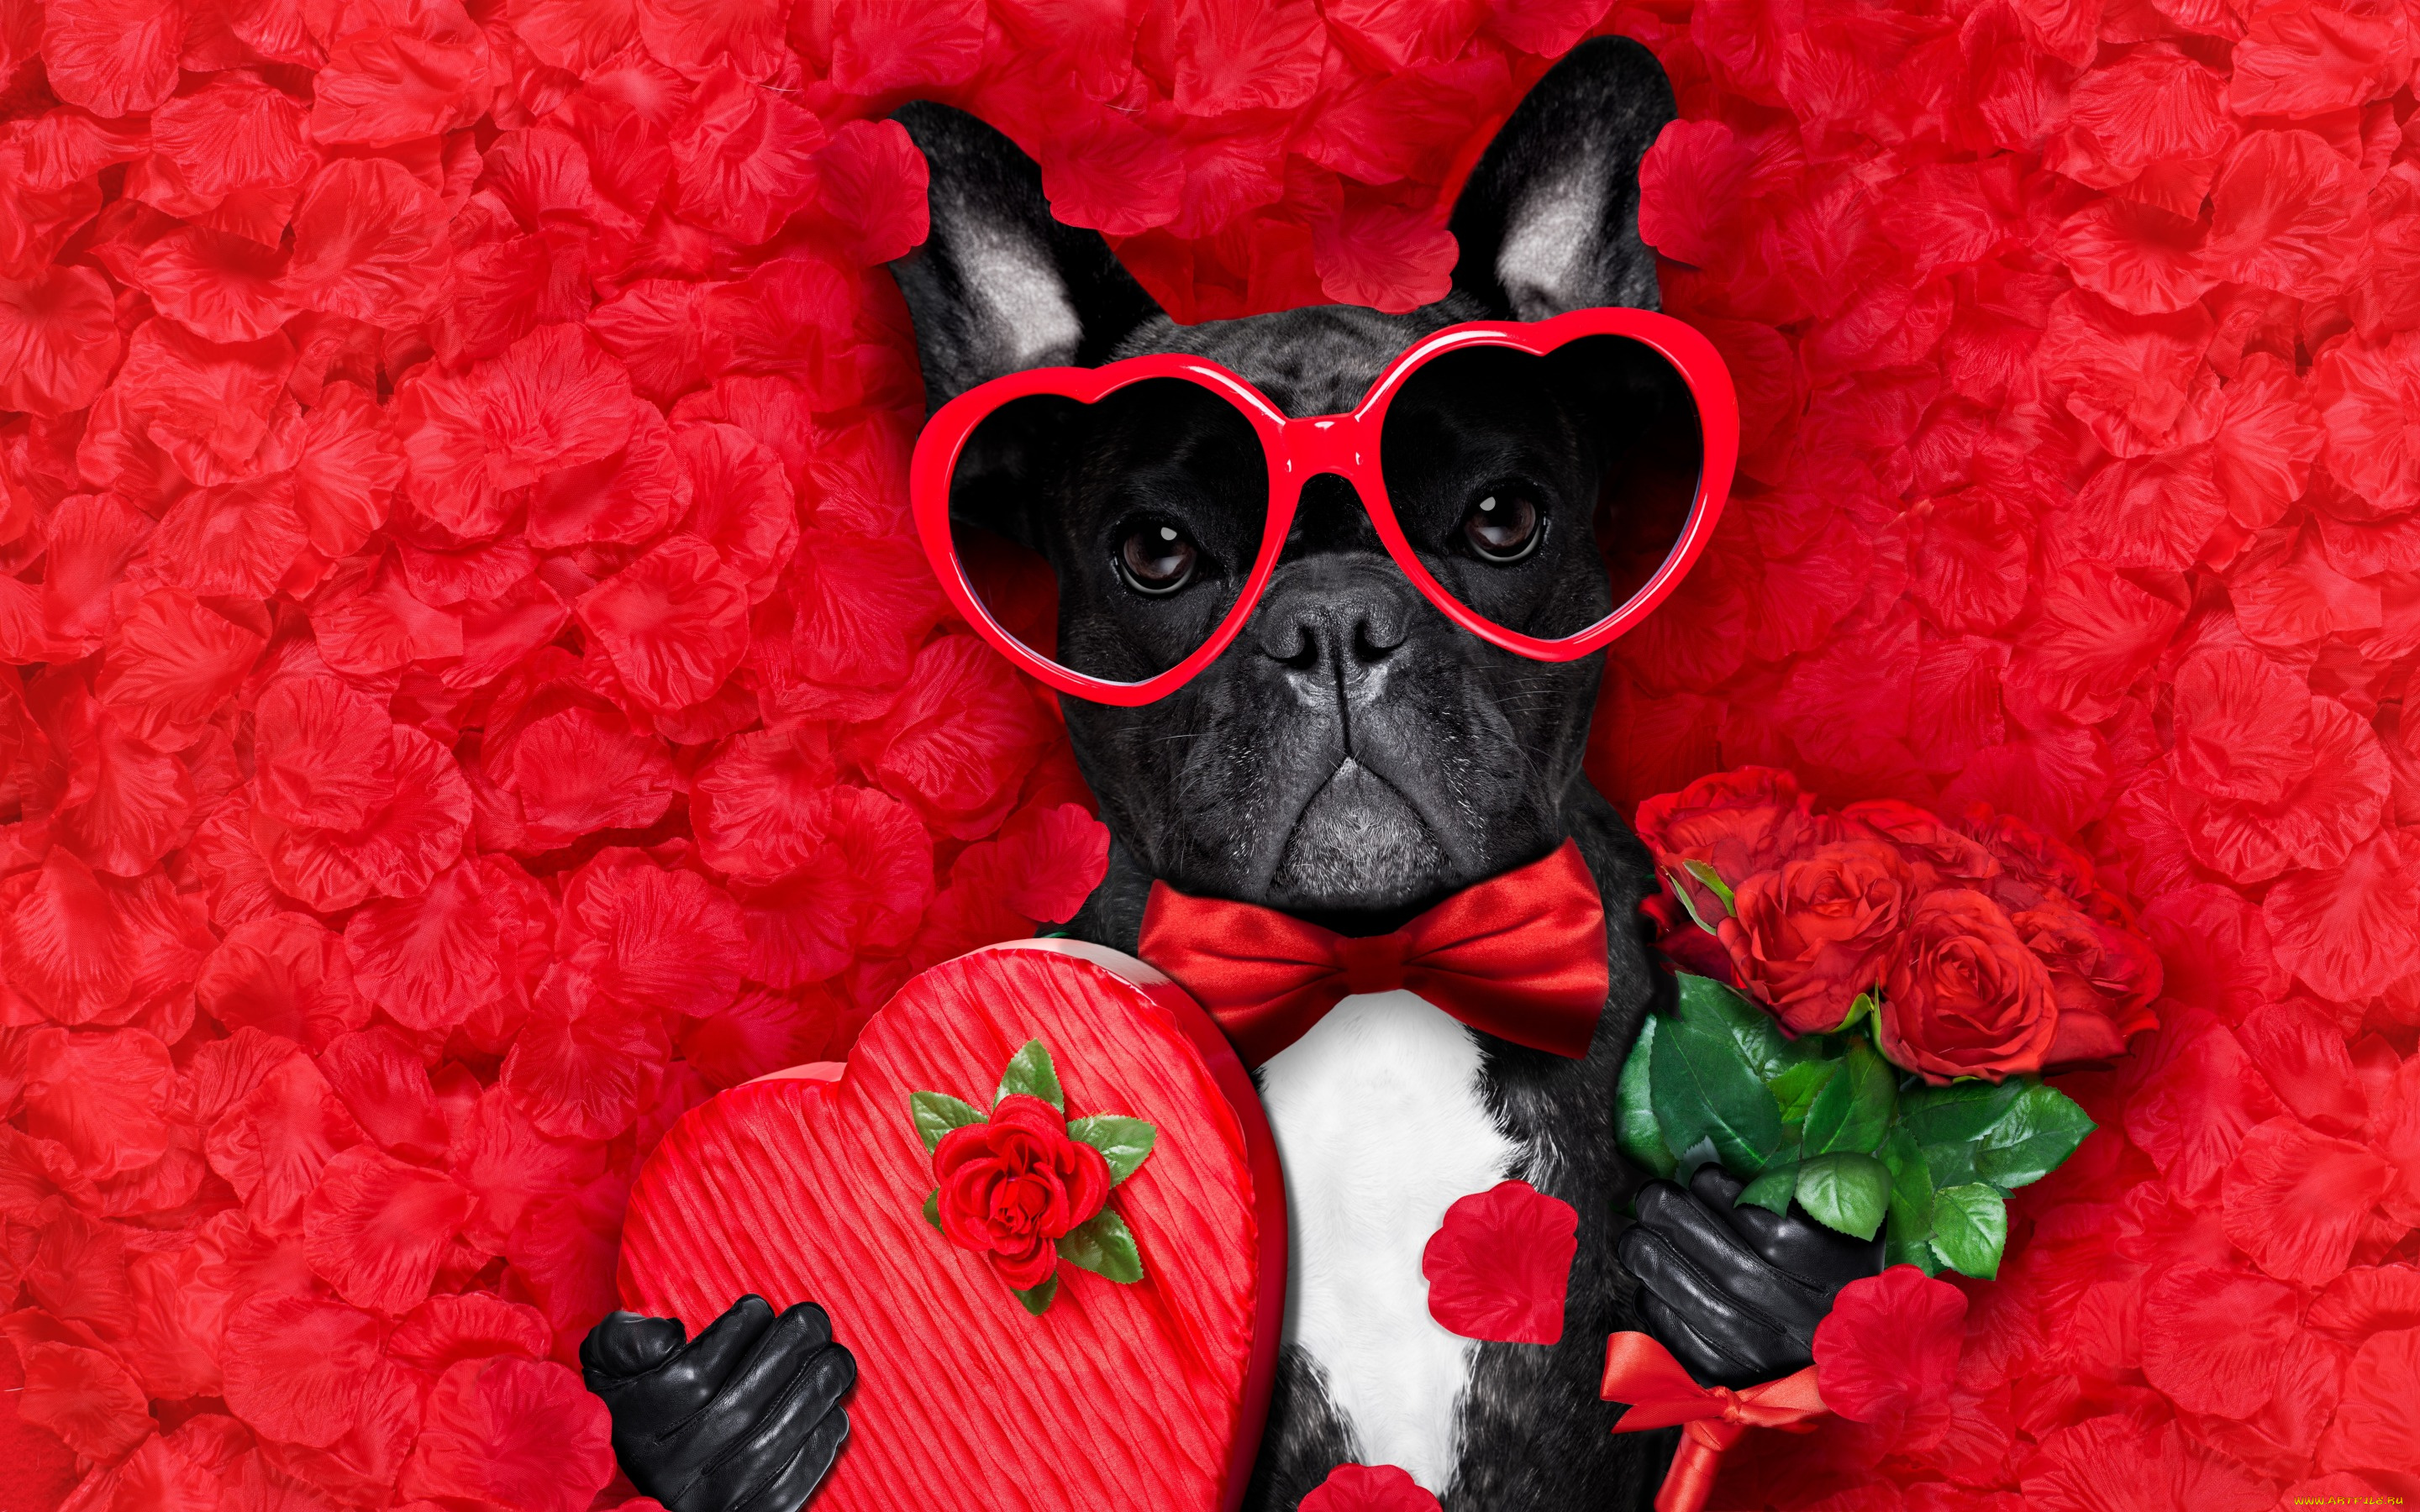 юмор, и, приколы, romantic, лепестки, love, dog, красные, розы, собака, petals, hearts, funny, valentine, rose